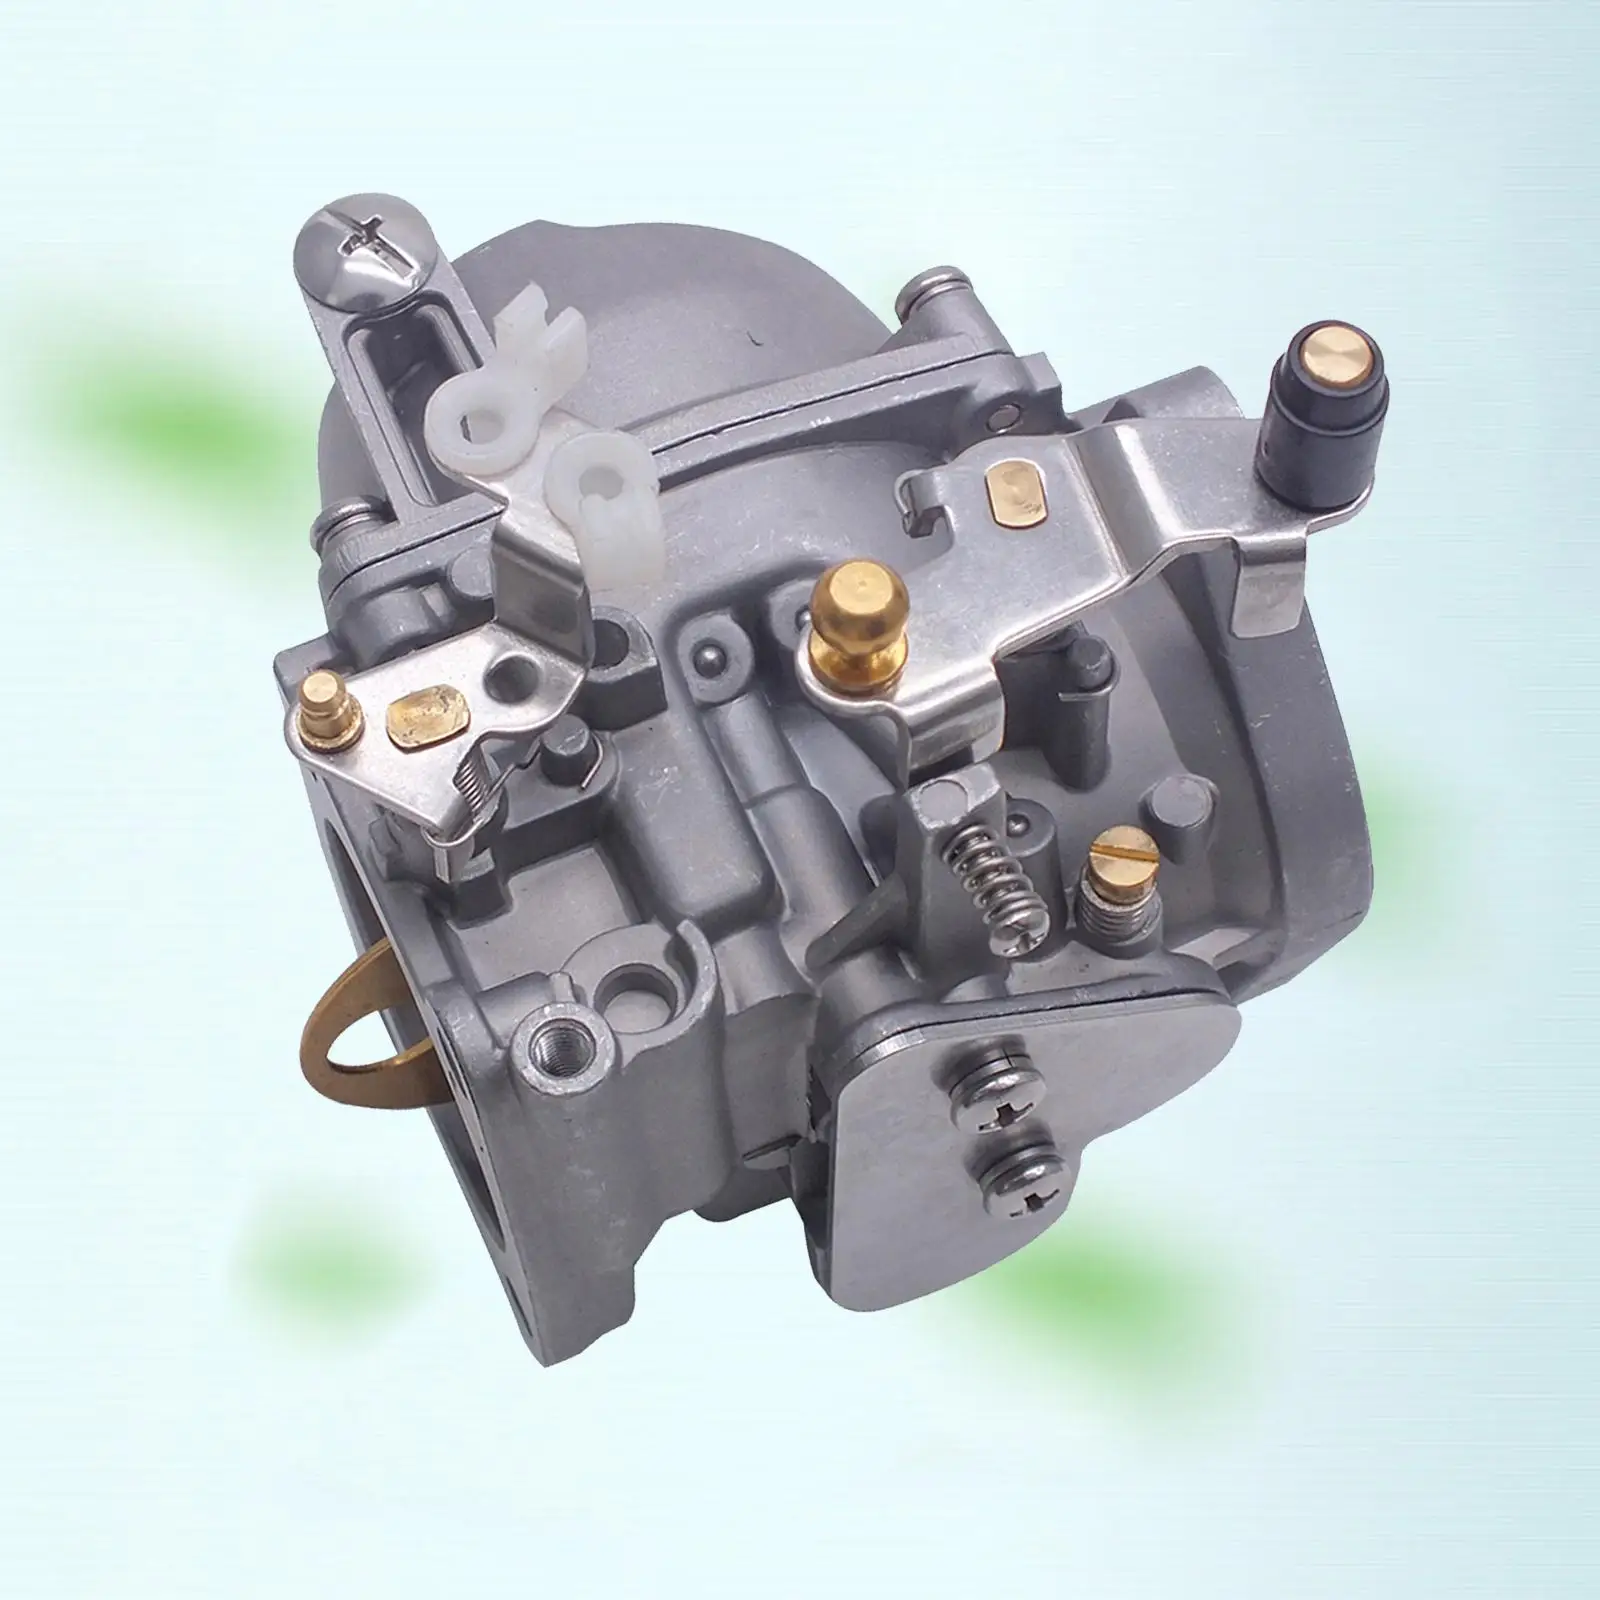 Carburetor Assembly for Yamaha 3-cylinder 85 HP 2-Stroke Outboard Engine